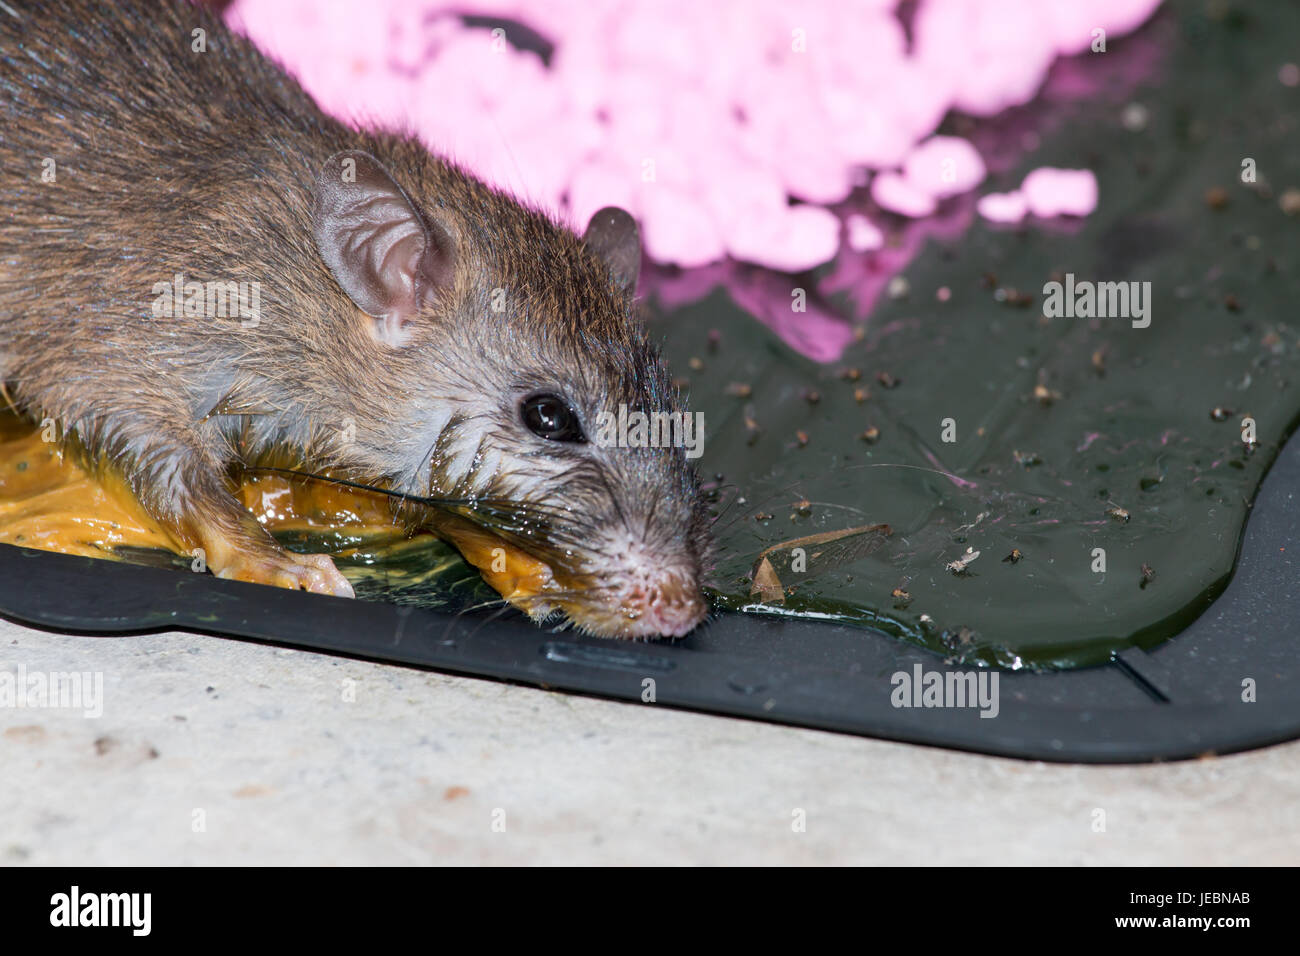 glue mousetrap, Rats on rat glue trap, Dead mouse in a mousetrap